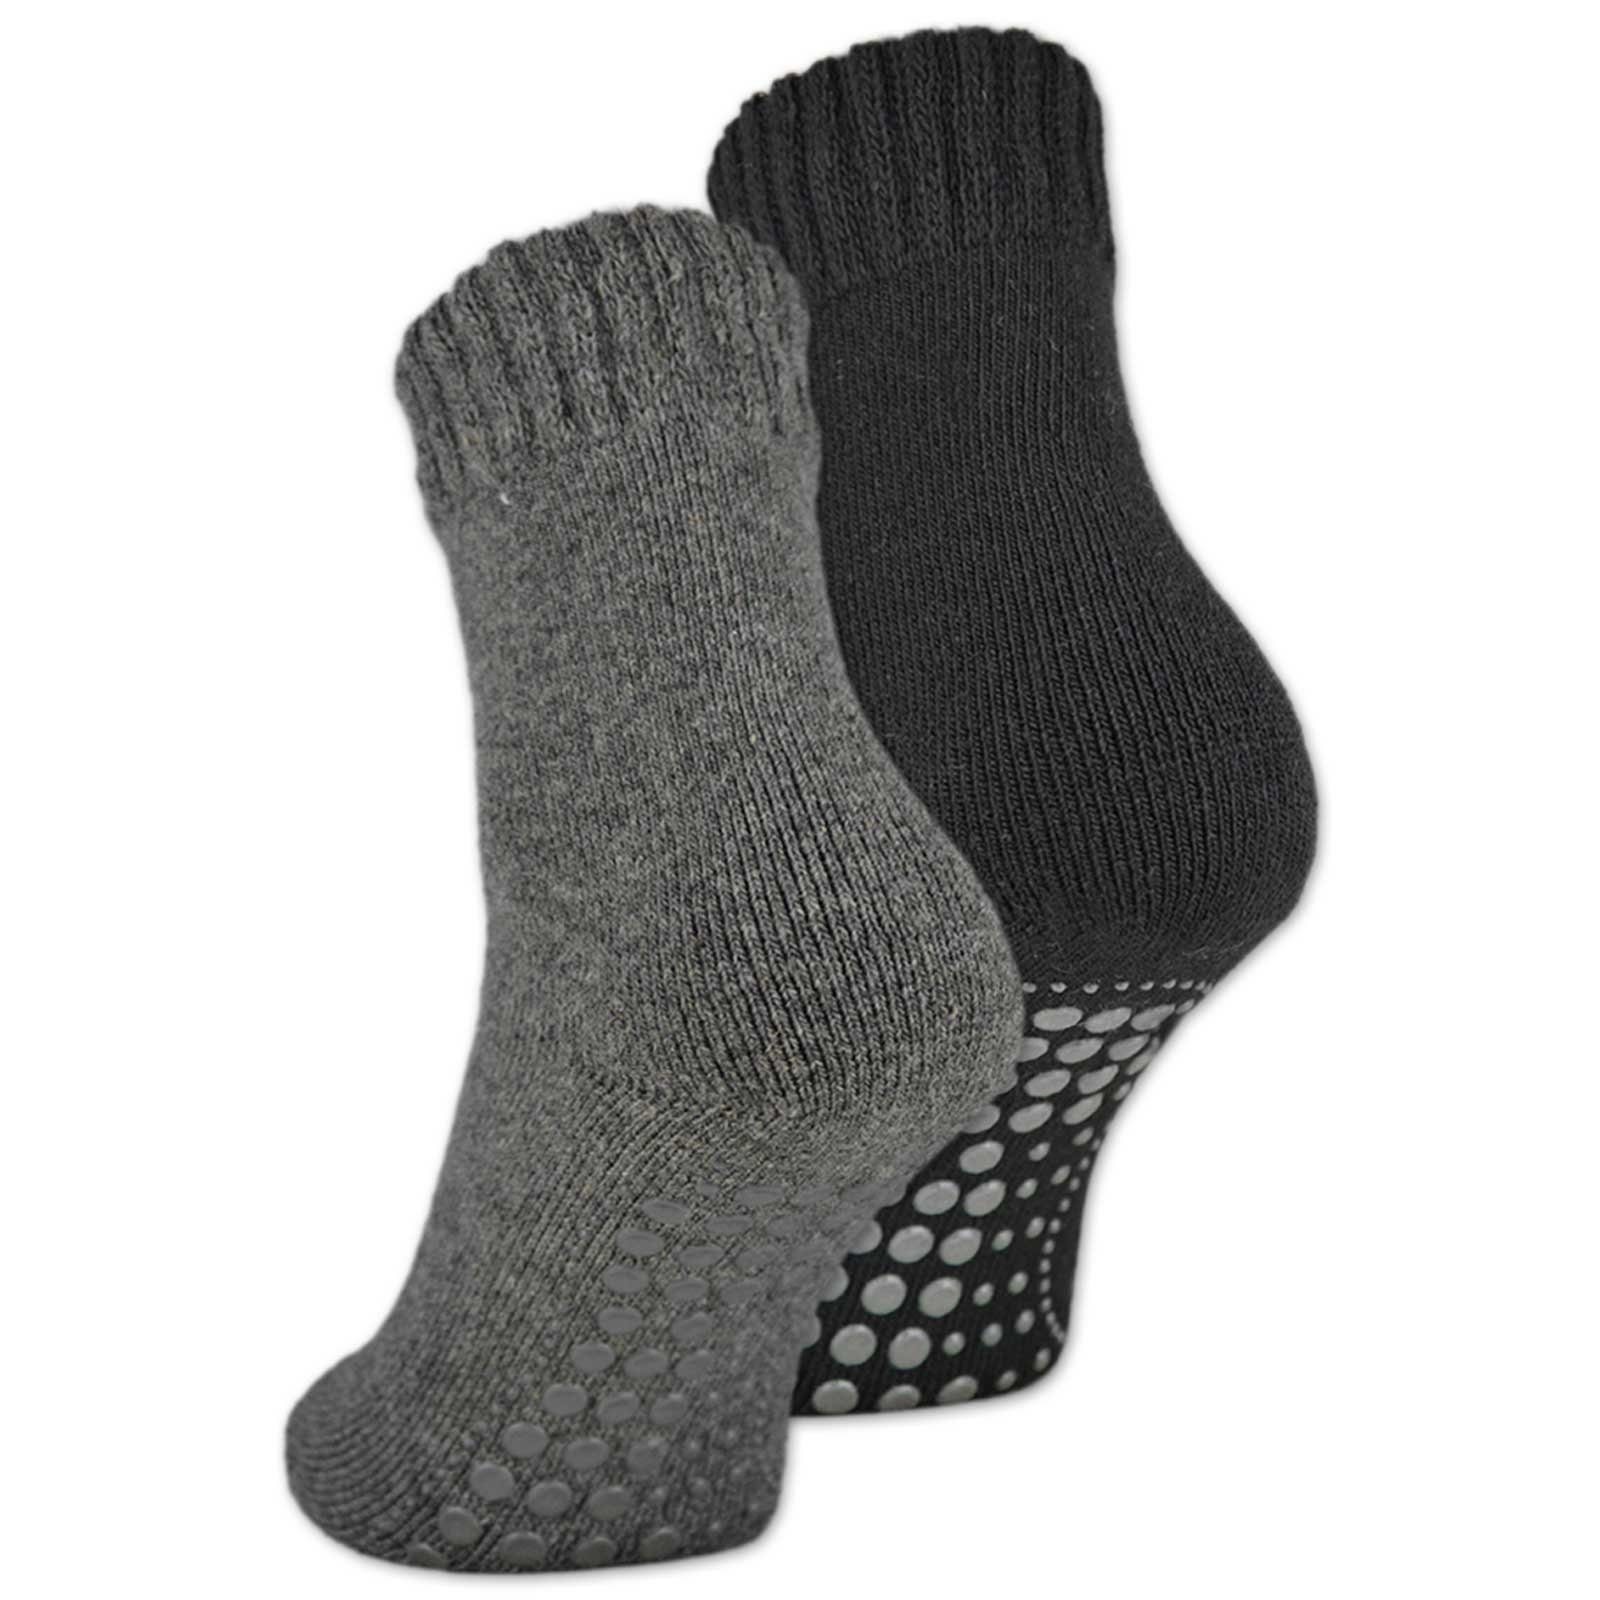 sockenkauf24 ABS-Socken 2, 4 oder 6 Paar Damen & Herren ABS Socken Anti Rutsch (Schwarz/Anthrazit, 2-Paar, 43-46) Socken mit Wolle - 21463 WP | Wintersocken